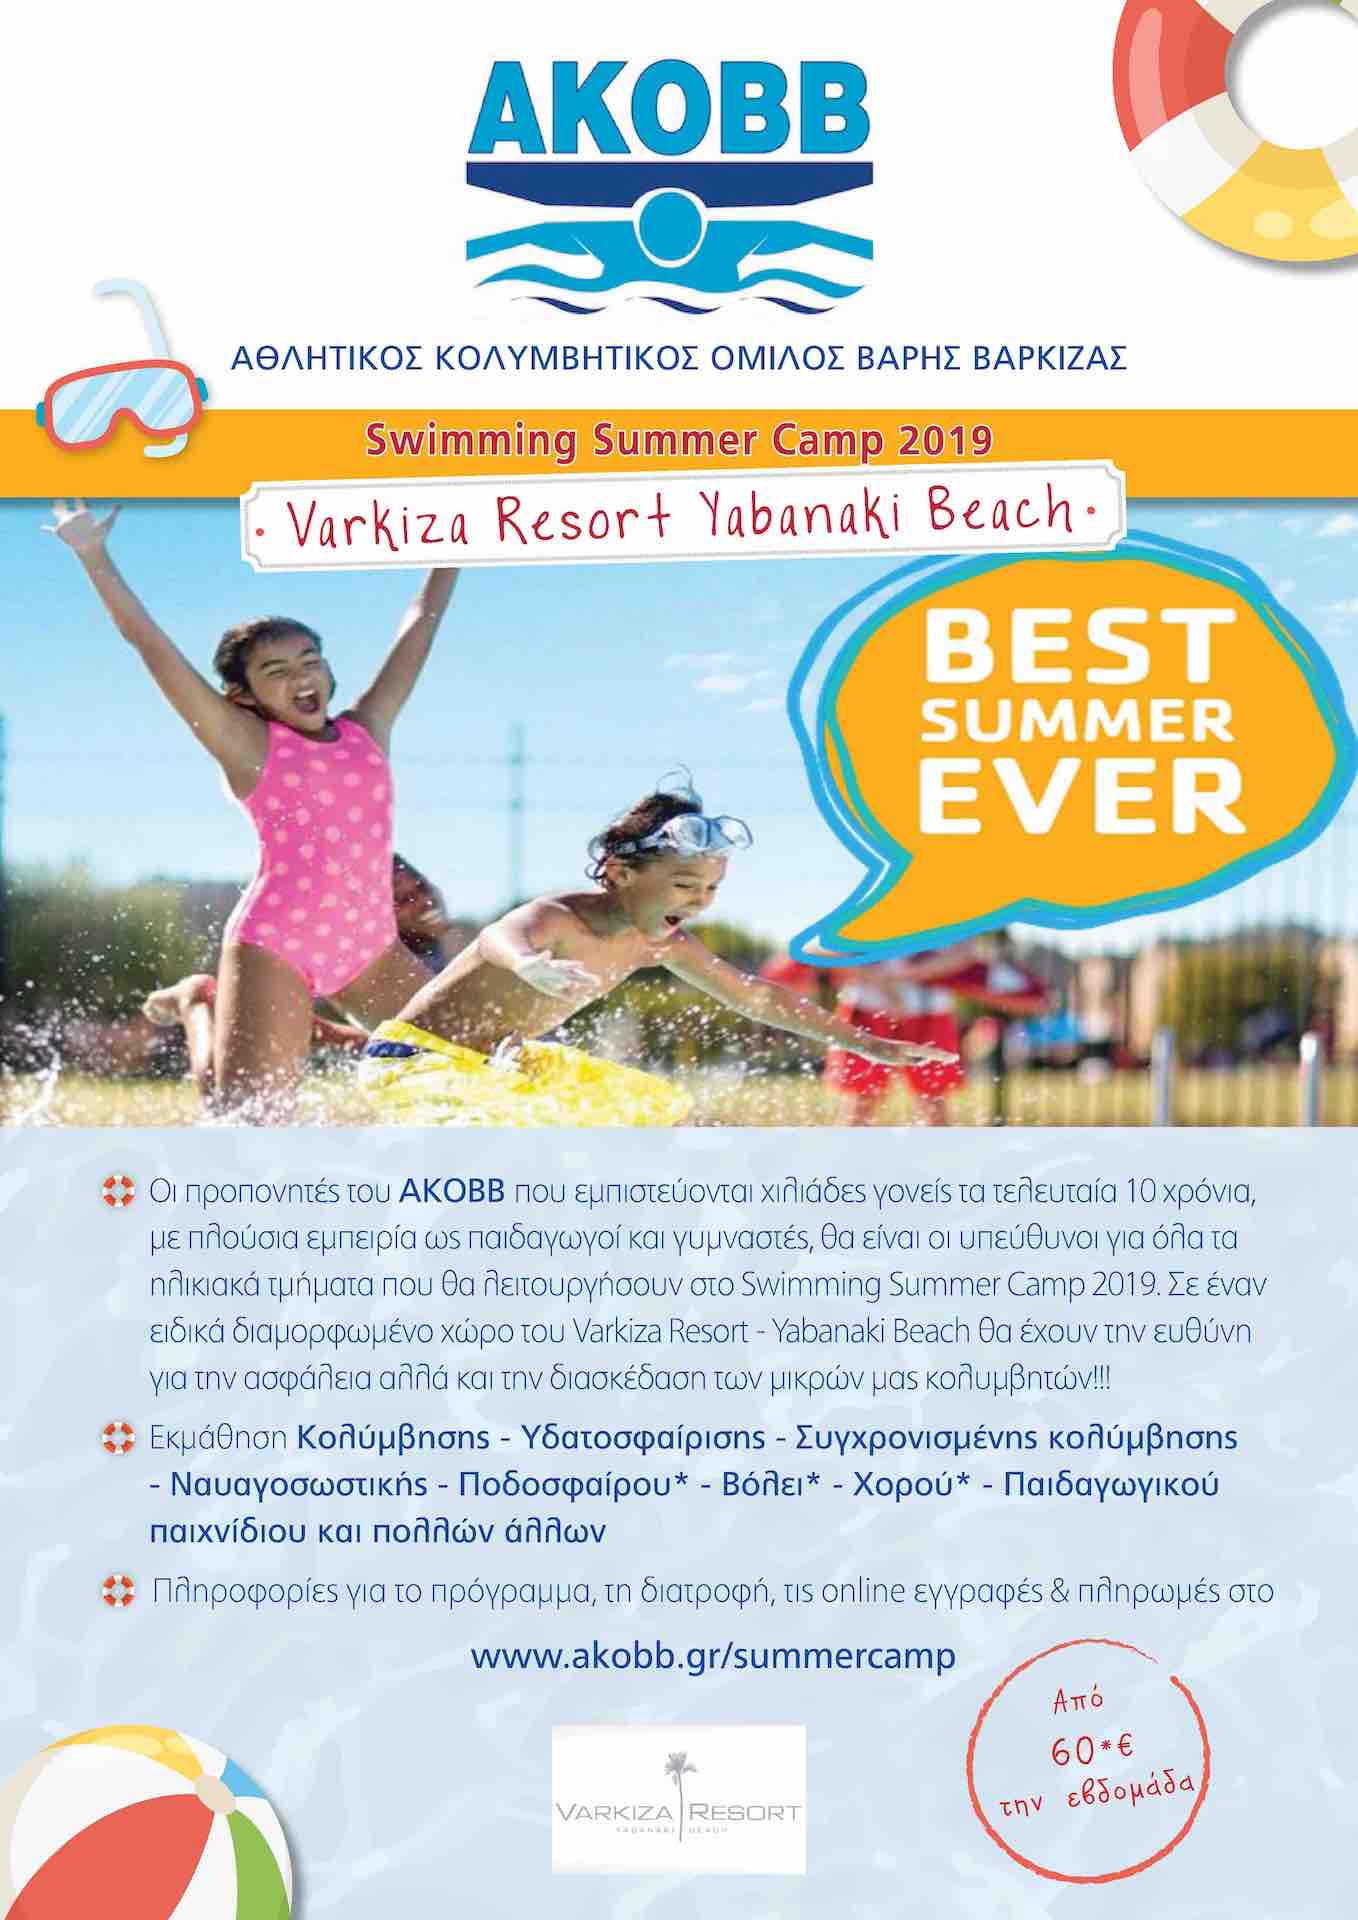 Swimming Summer Camp 2019 στο Varkiza Resort